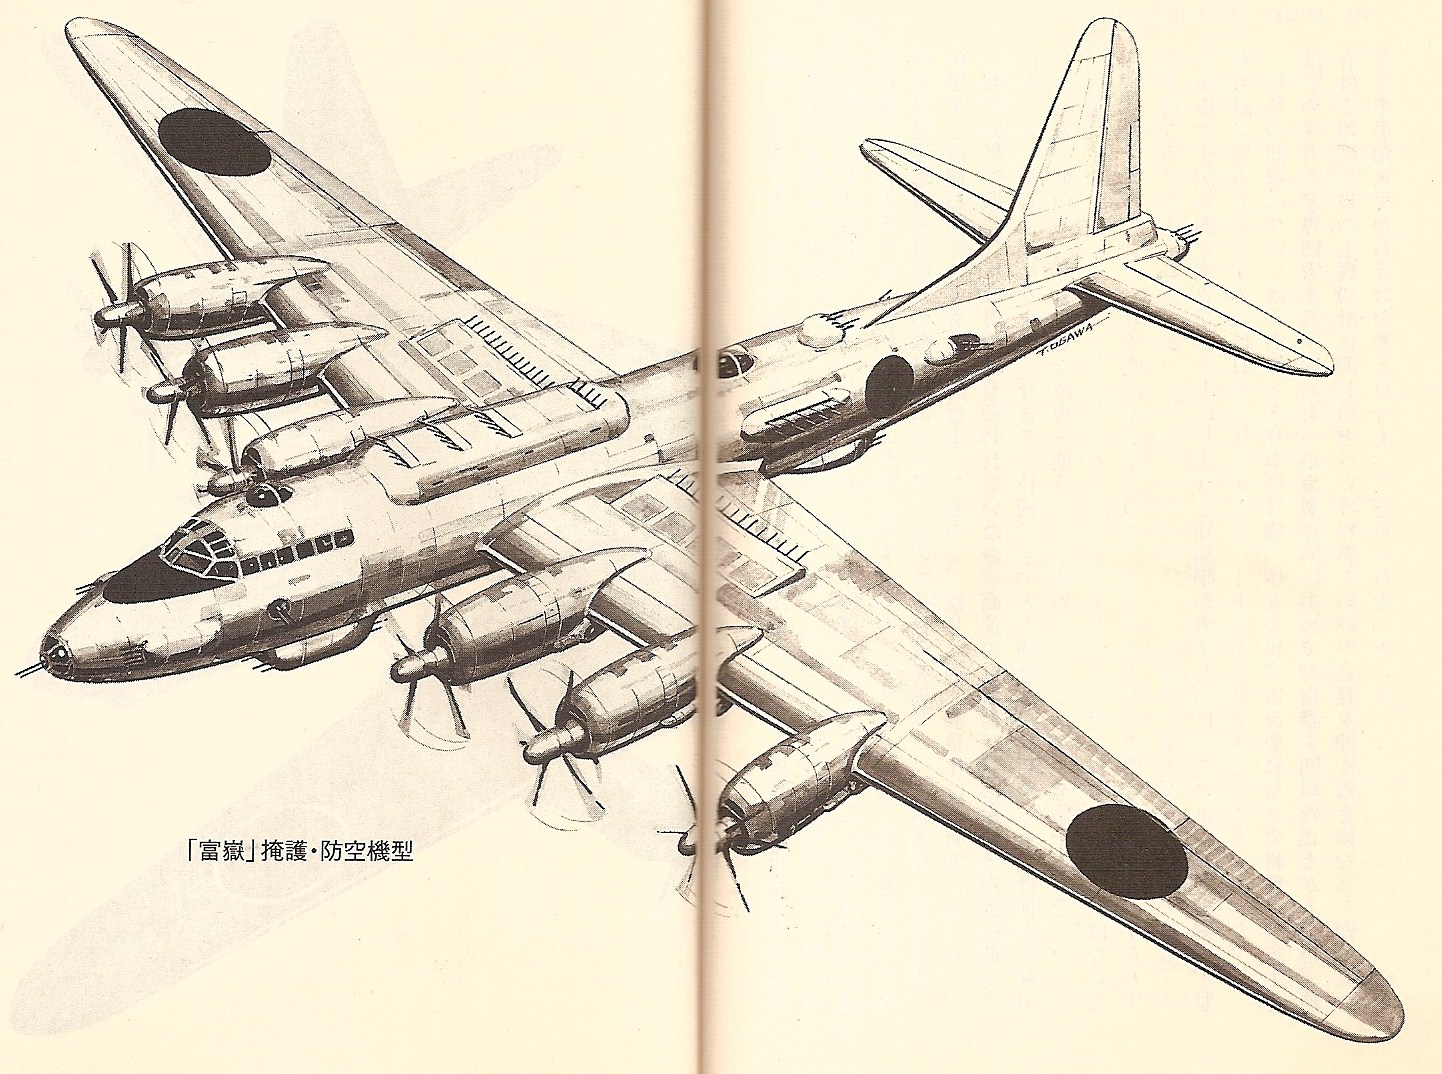 Проект стратегического бомбардировщика Nakajima G10N Fugaku. Япония